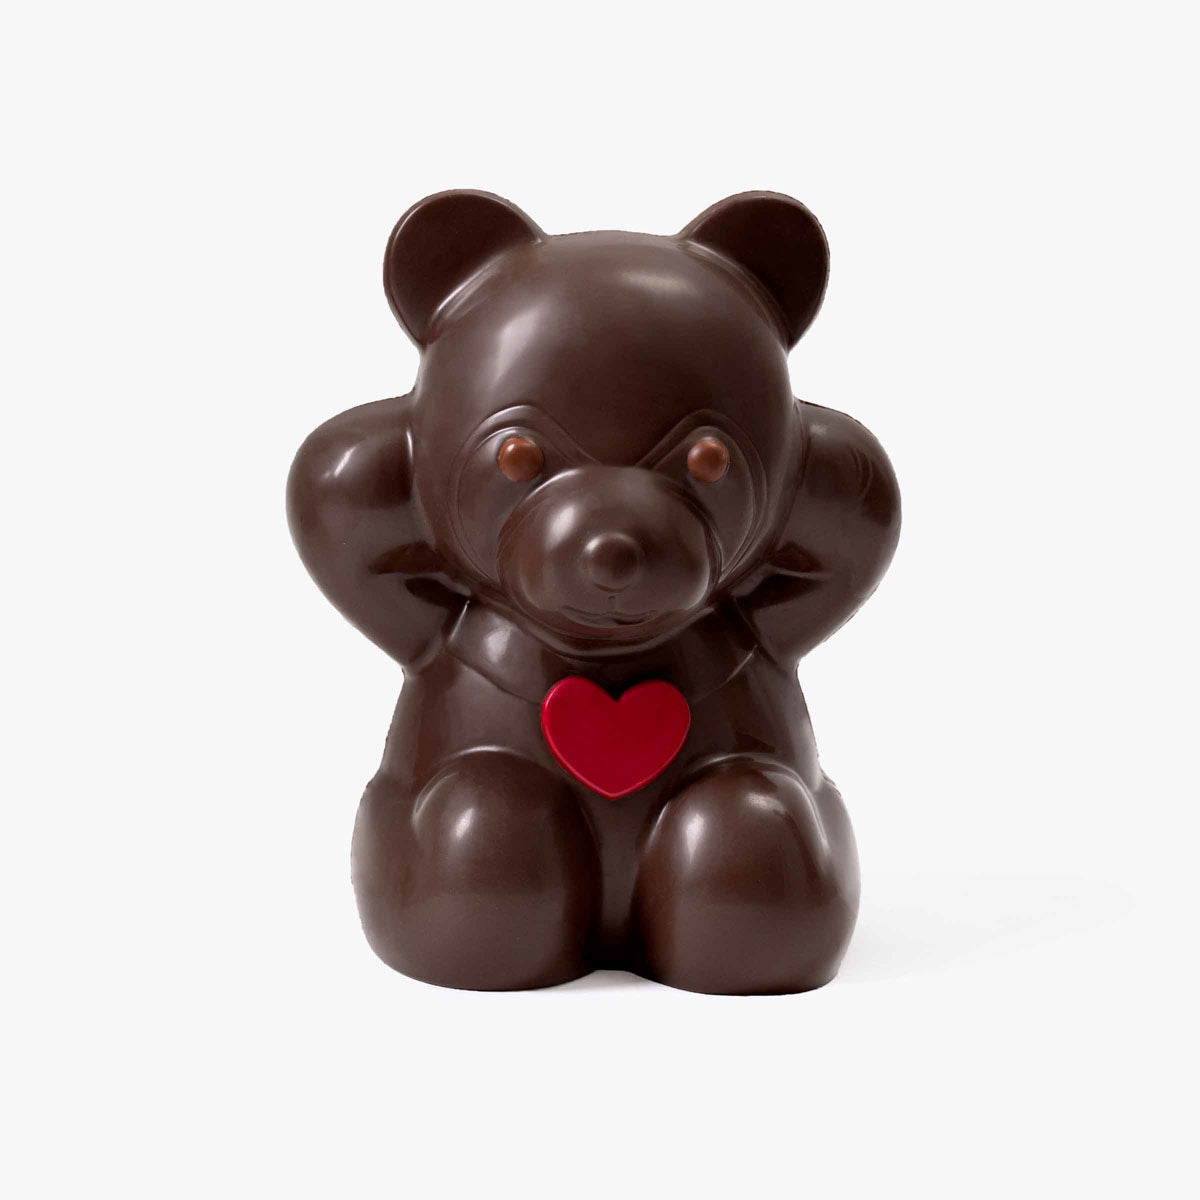 Osito San Valentin - Chocolate Negro 690g - Bombonería Pons - Complementos